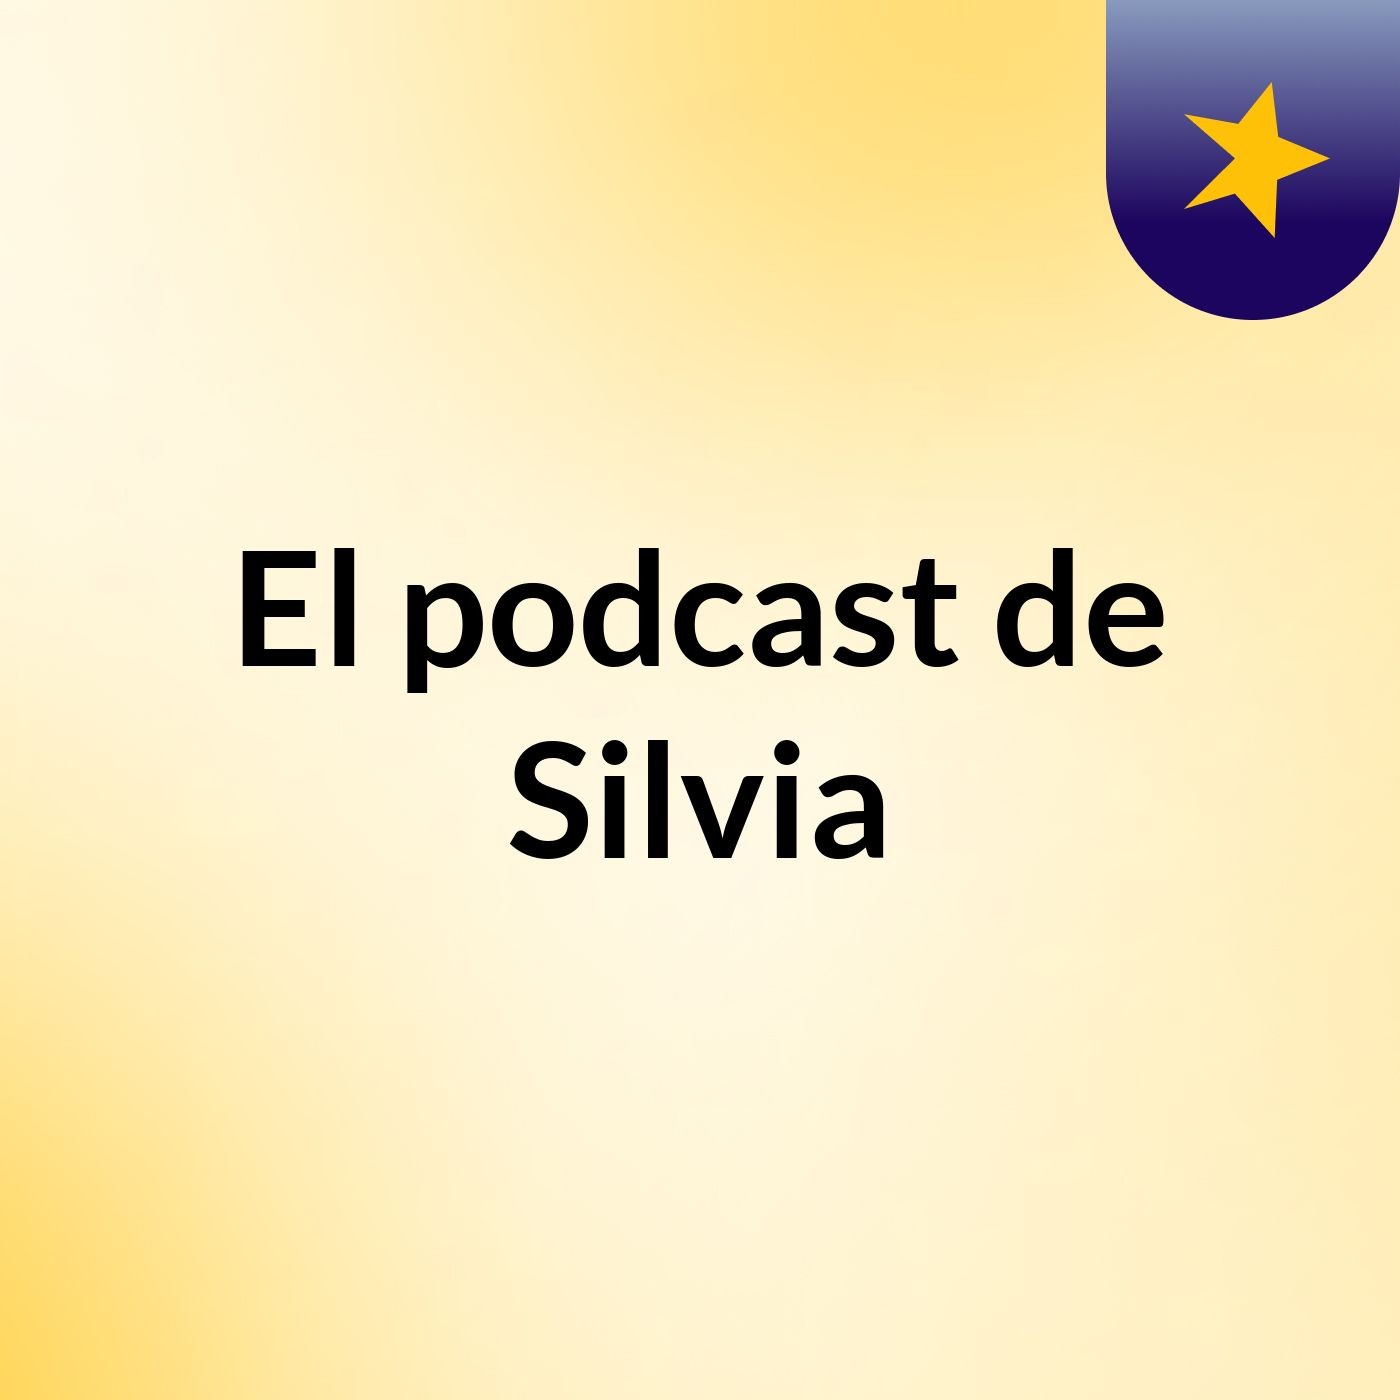 El podcast de Silvia